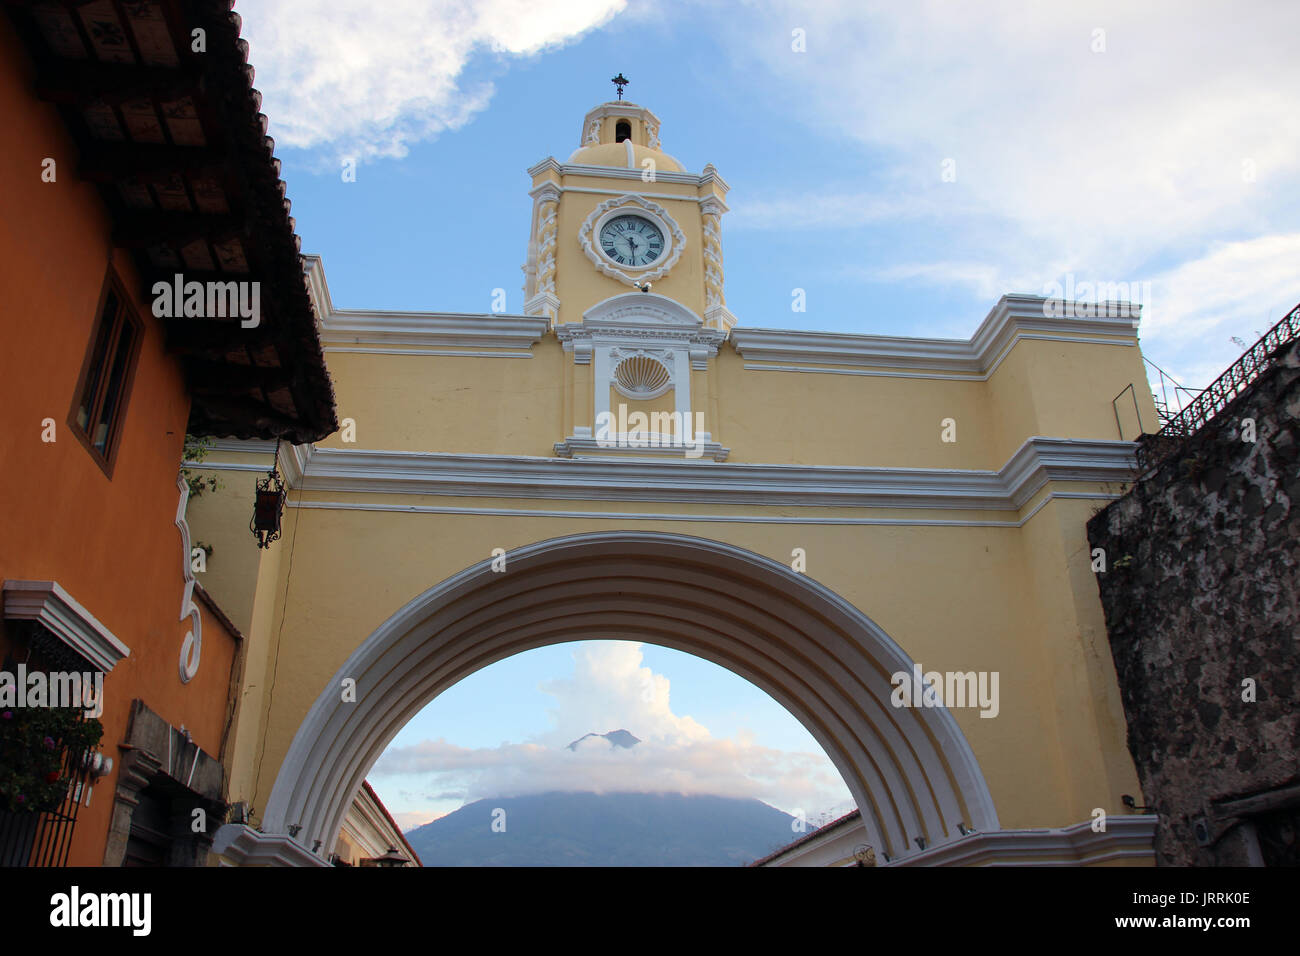 Arco con reloj en la calle principal de La Antigua Guatemala, al fondo se ve el volcán de agua, el arco es icono de la ciudad y onu punto de encuentro Foto Stock